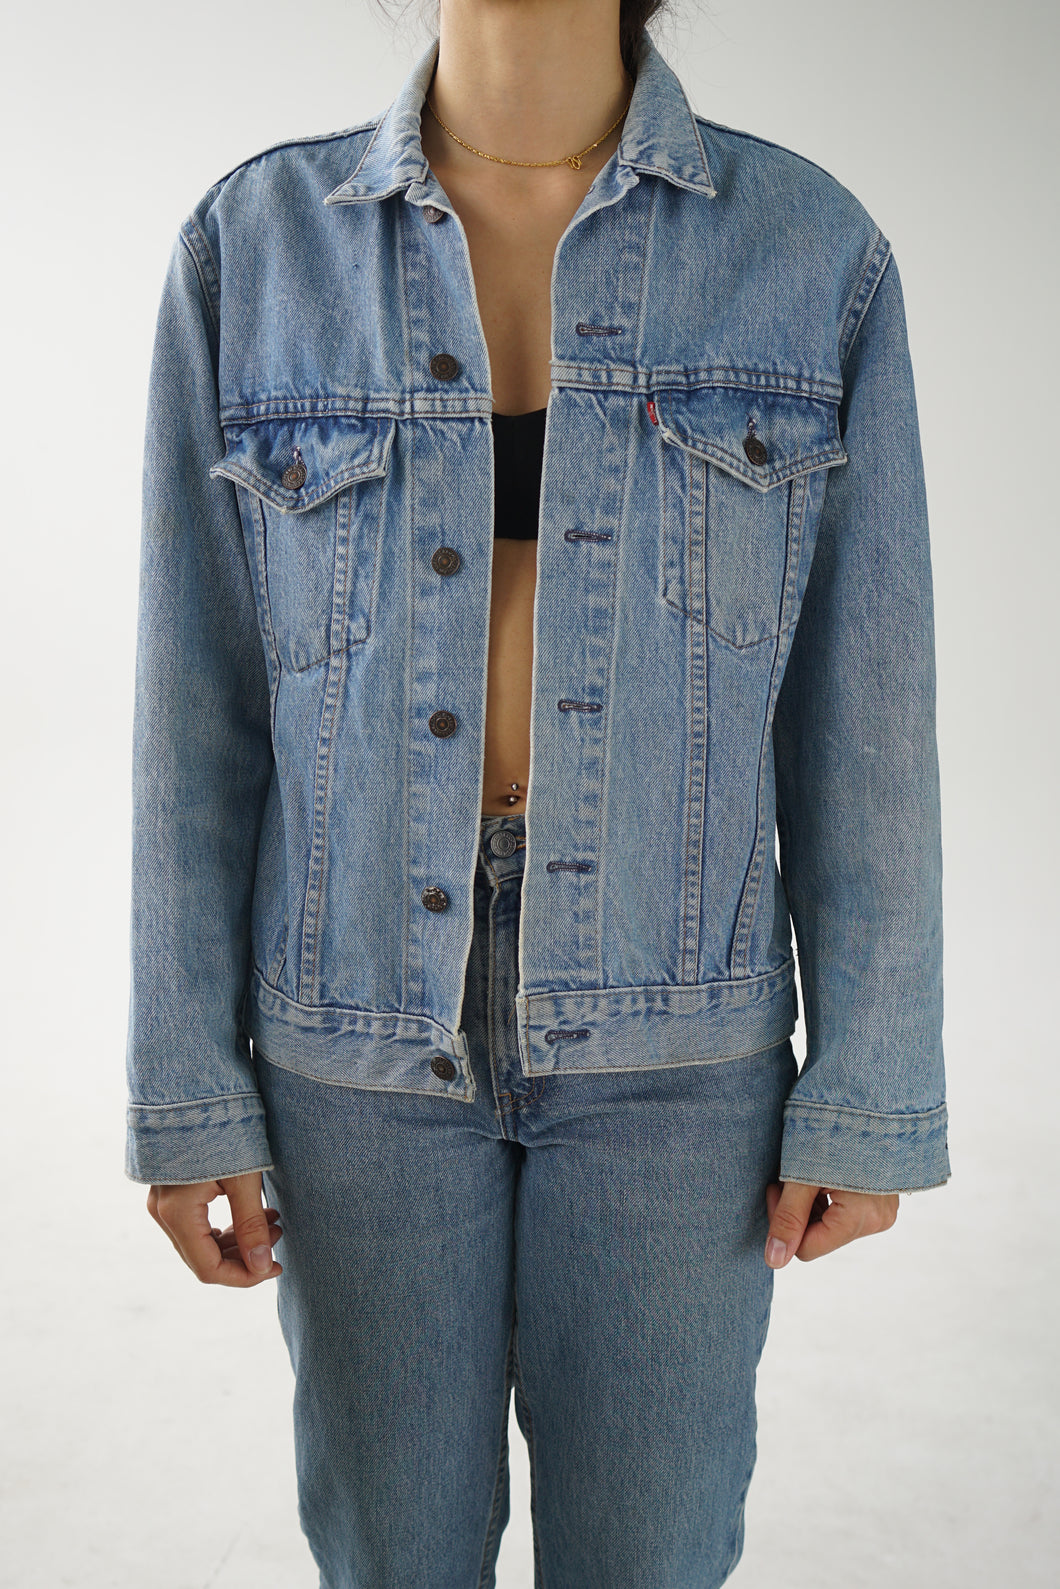 Levis jeans jacket type III 70s-80s